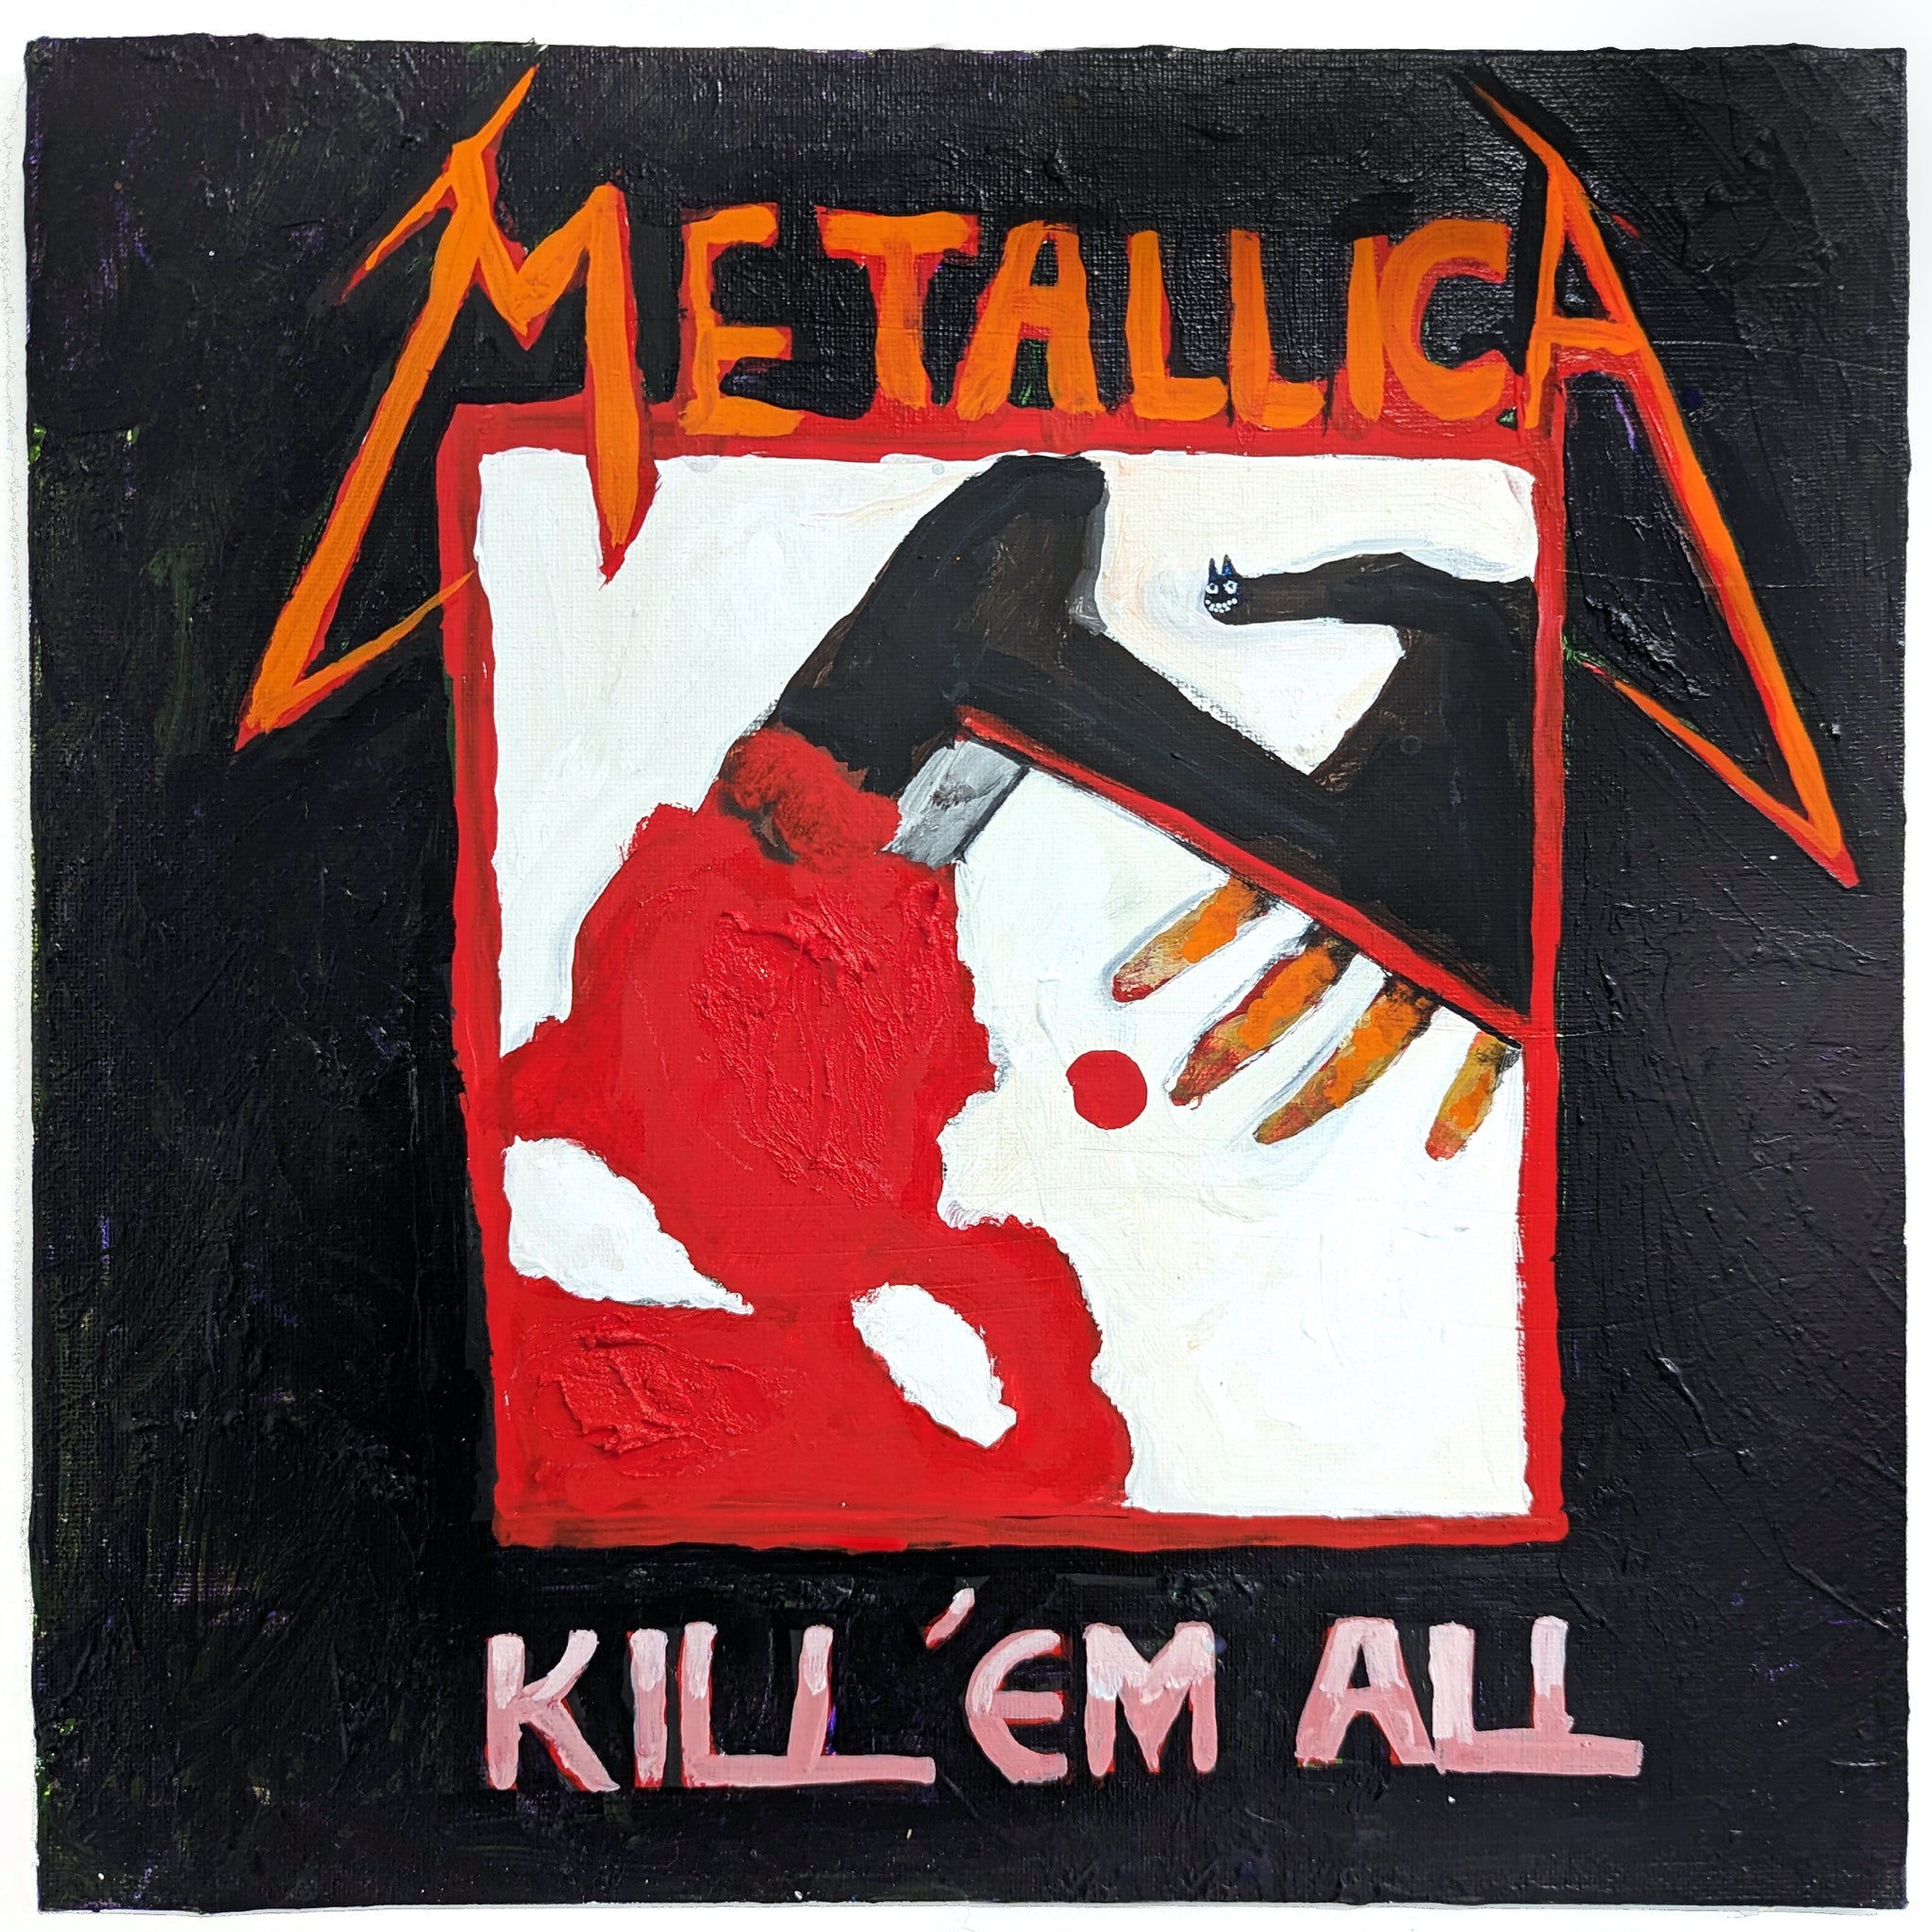 Jac Lahav, "Metallica (Kill Em All)"